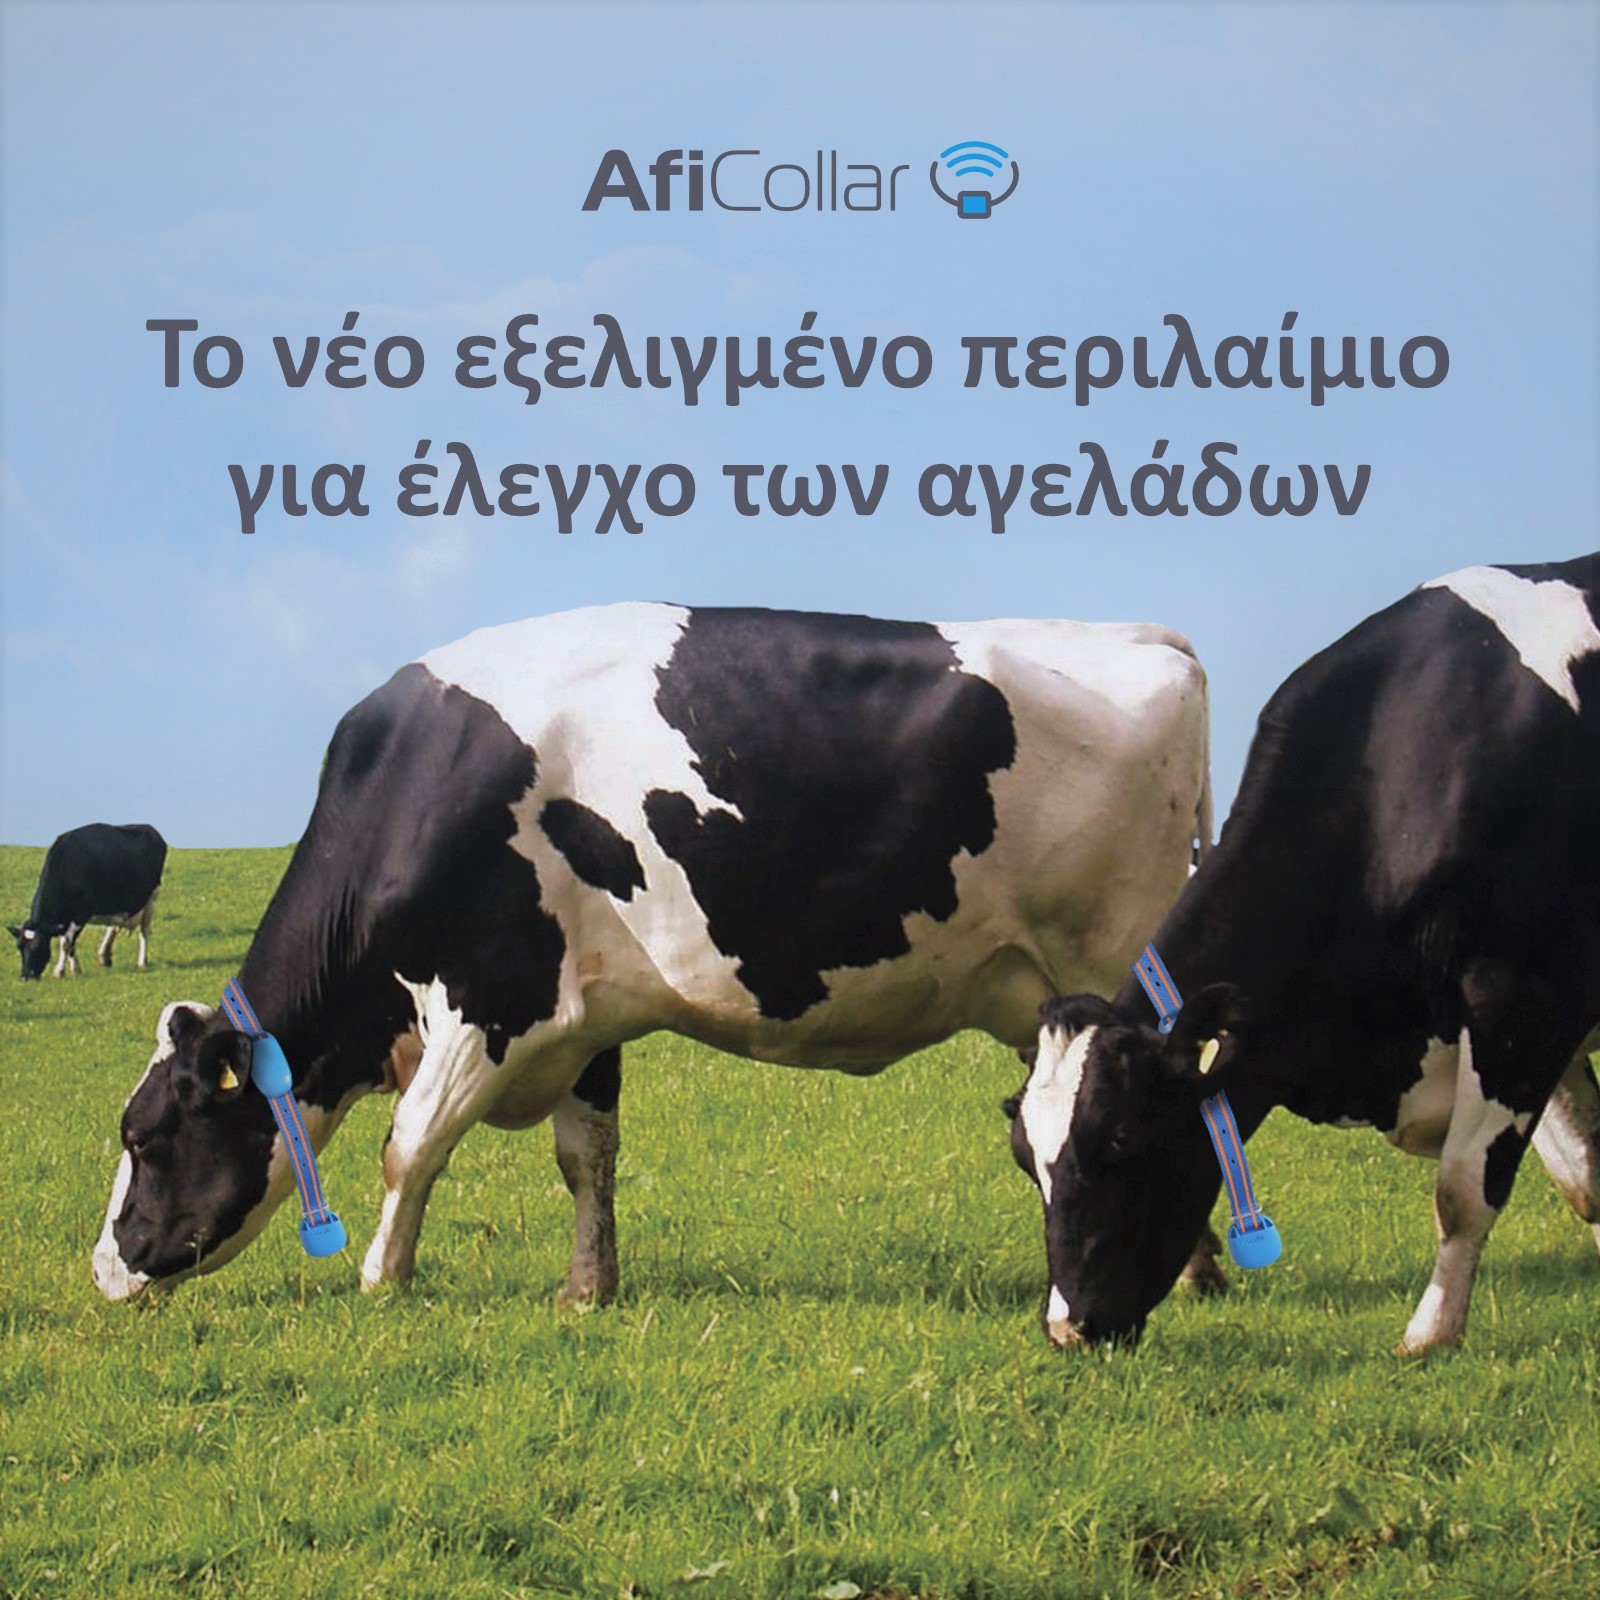 Σύστημα ηλεκτρονικής παρακολούθησης αγελάδων Silent Herdsman